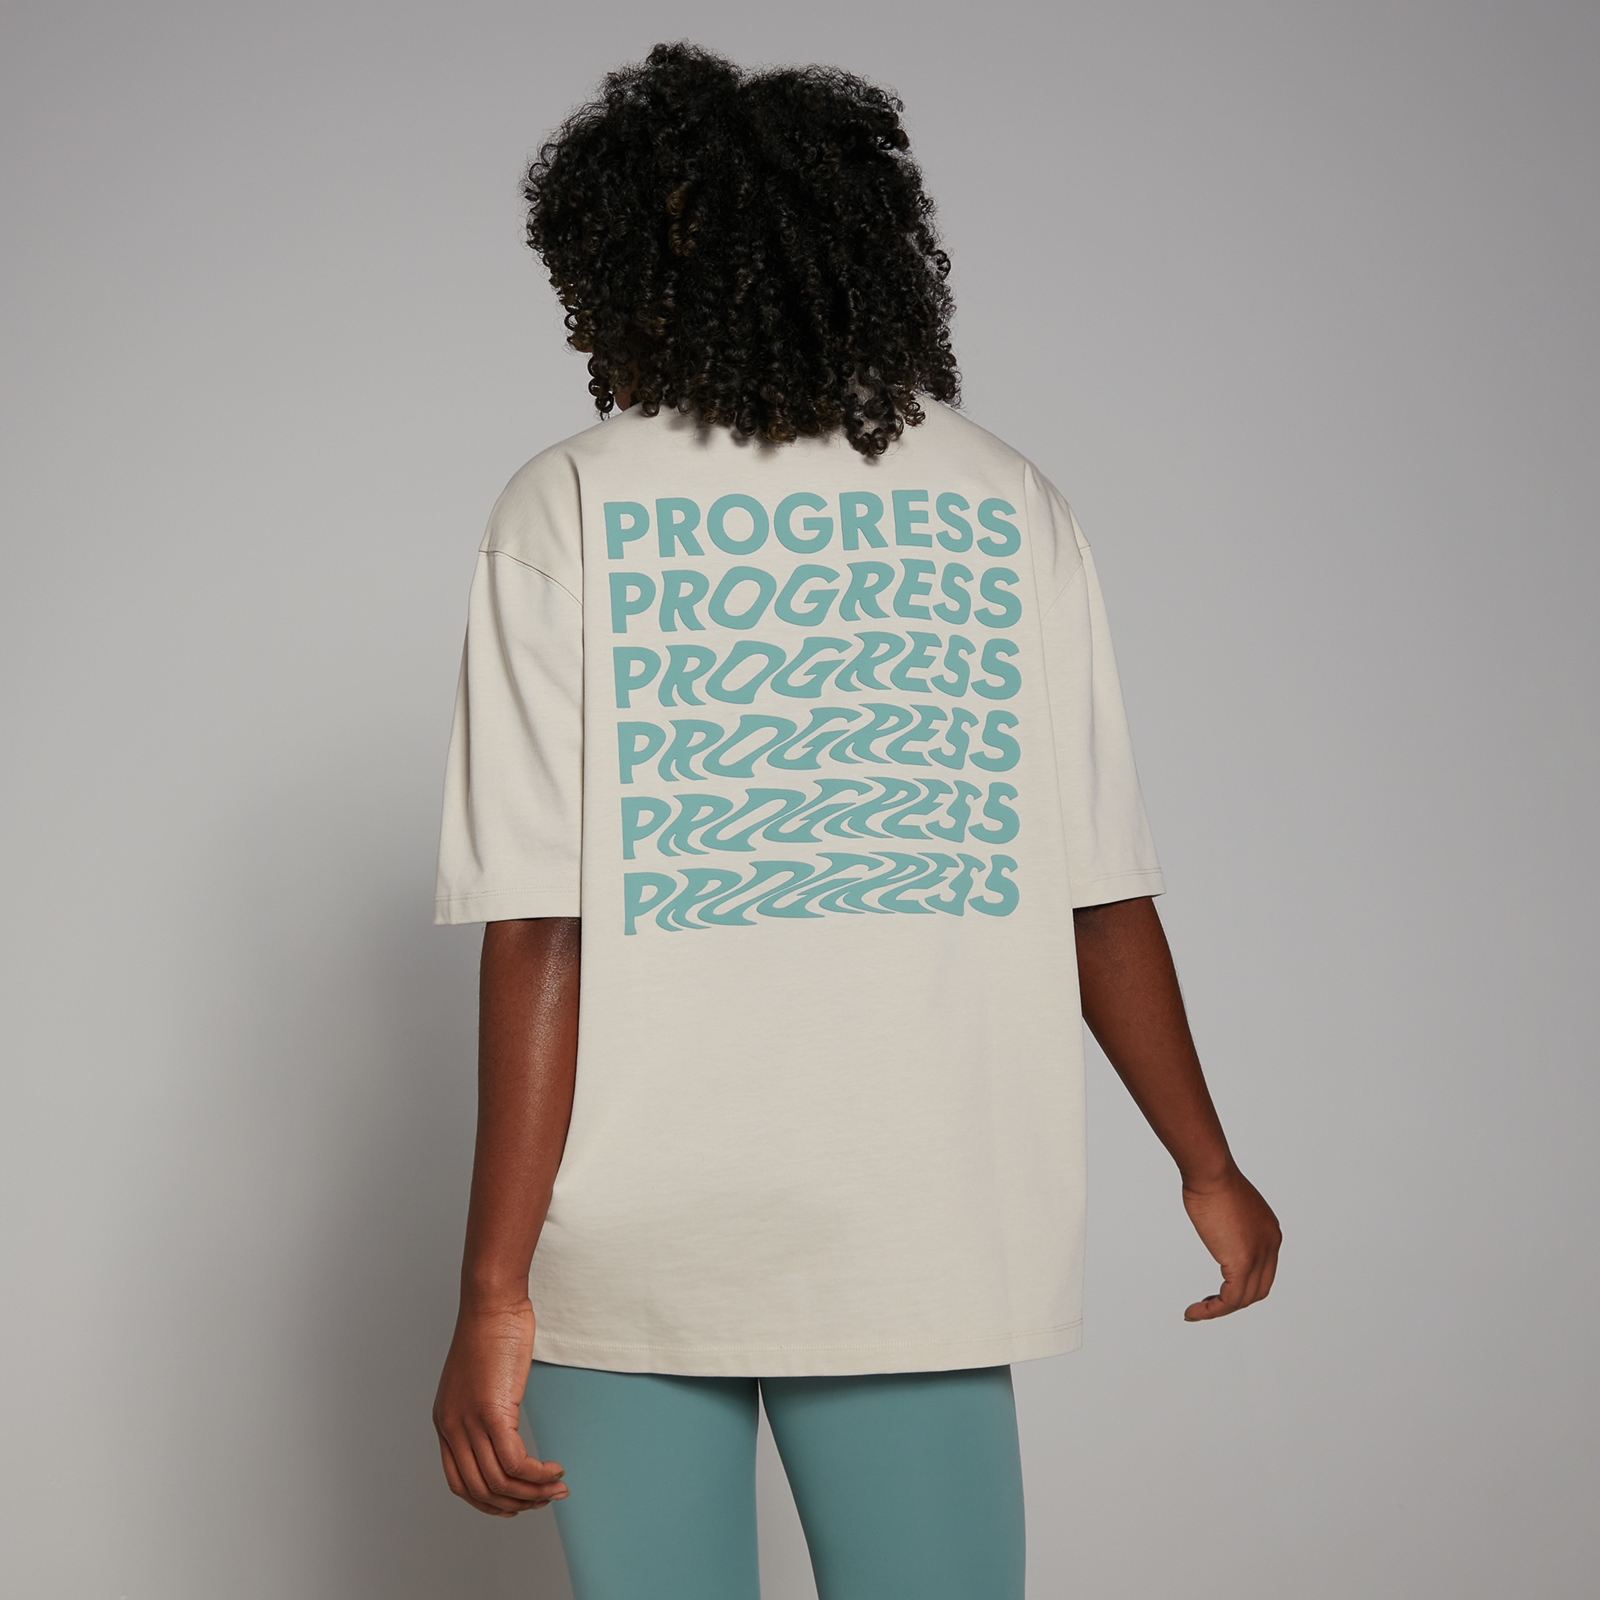 Tempo 節奏系列 女士 Progress T 恤 - 雨天